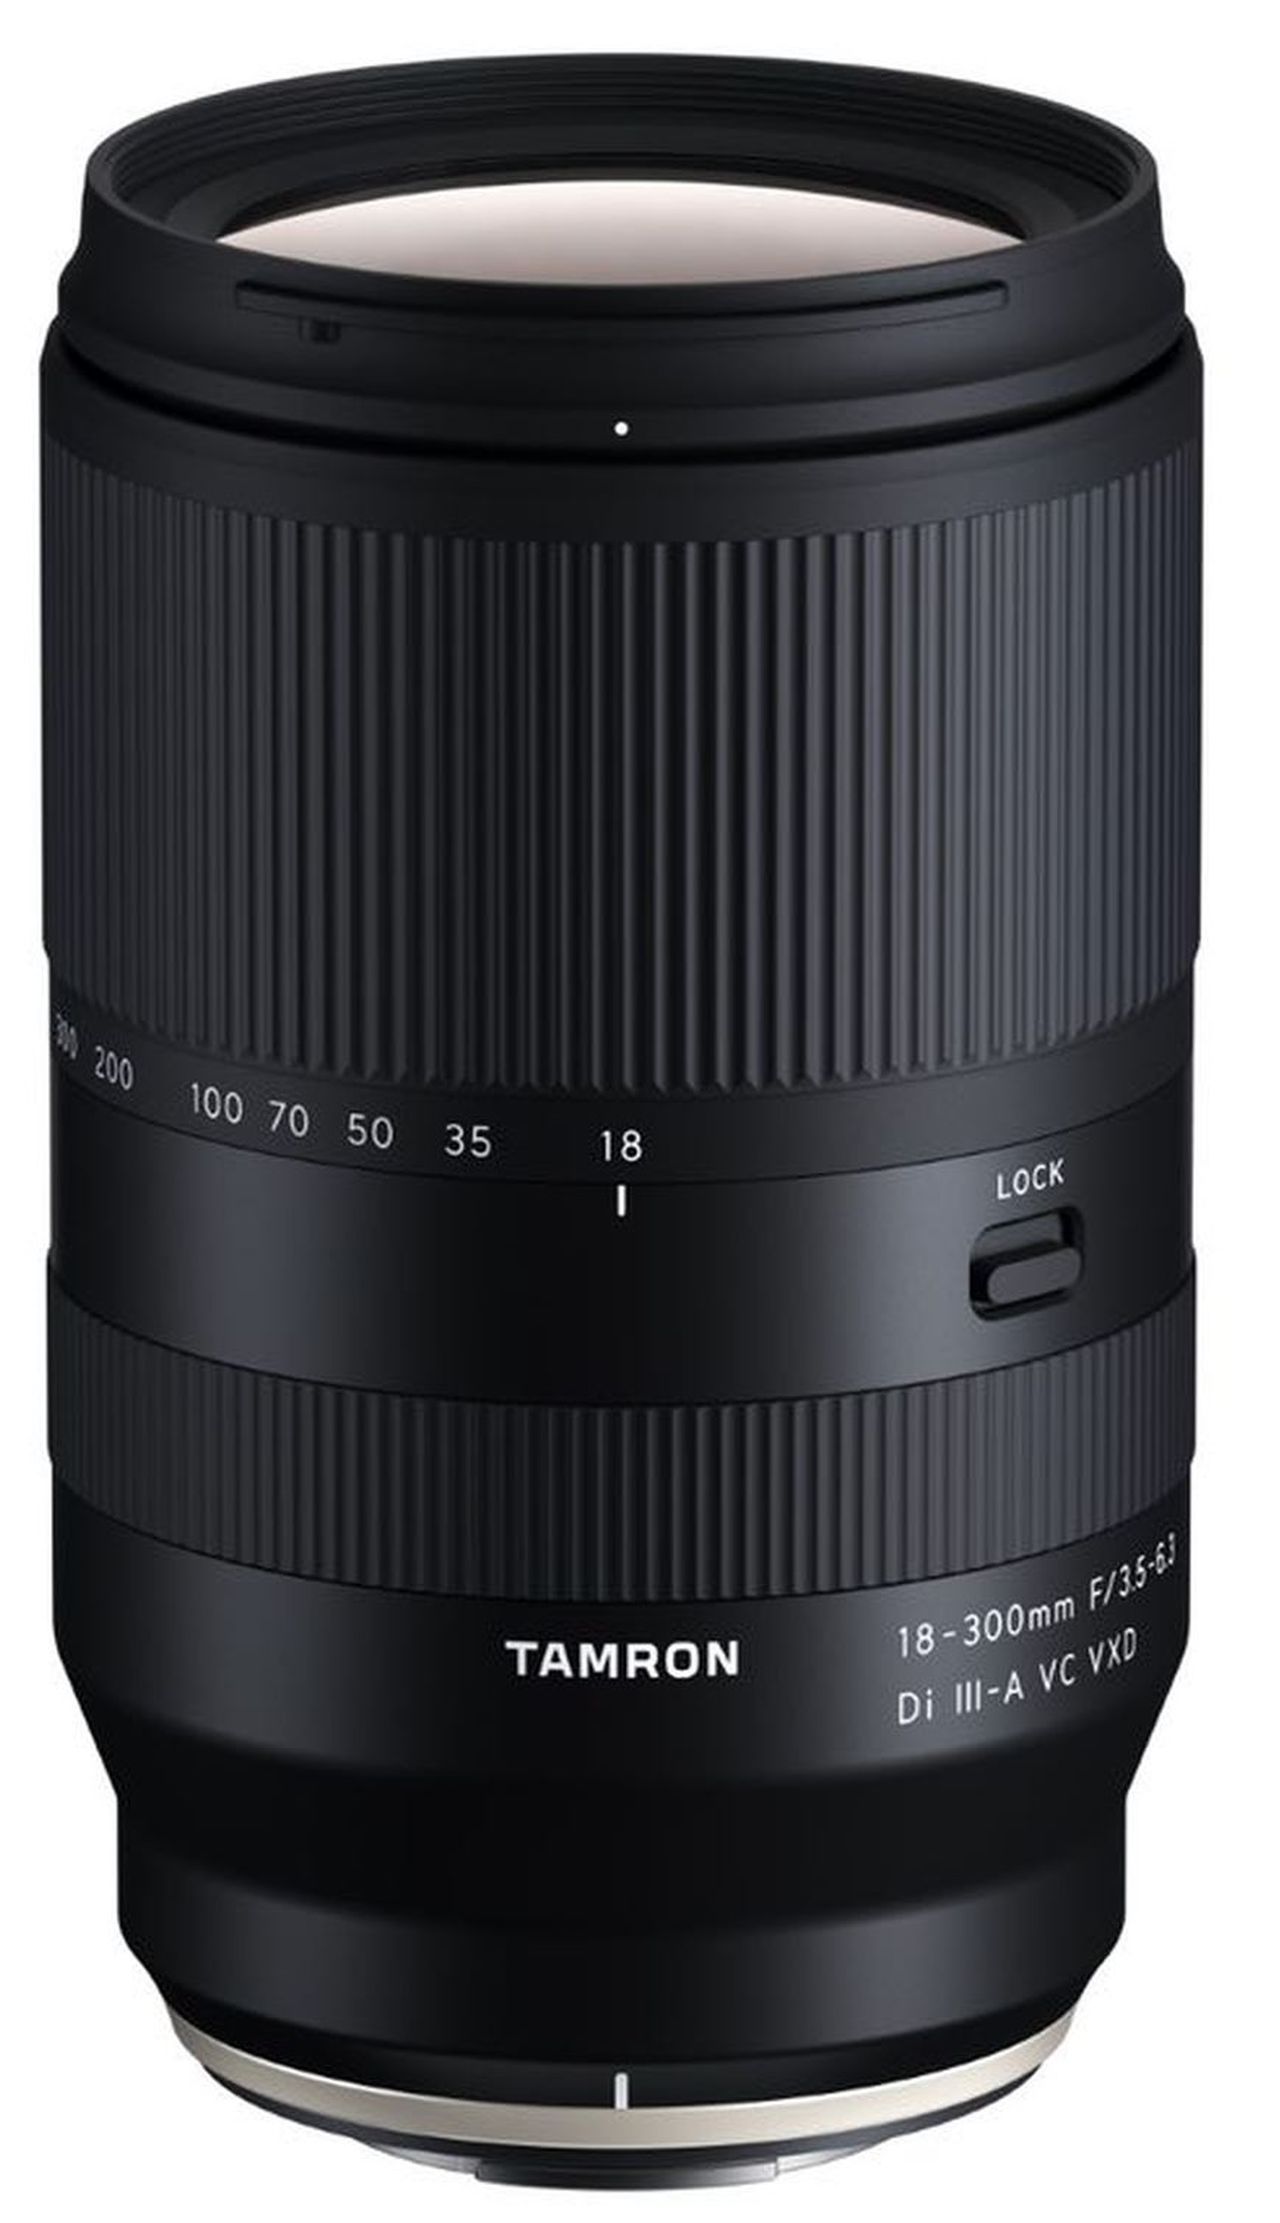 Tamron 18-300mm F3.5-6.3 Eマウントご検討のほど宜しくお願いします